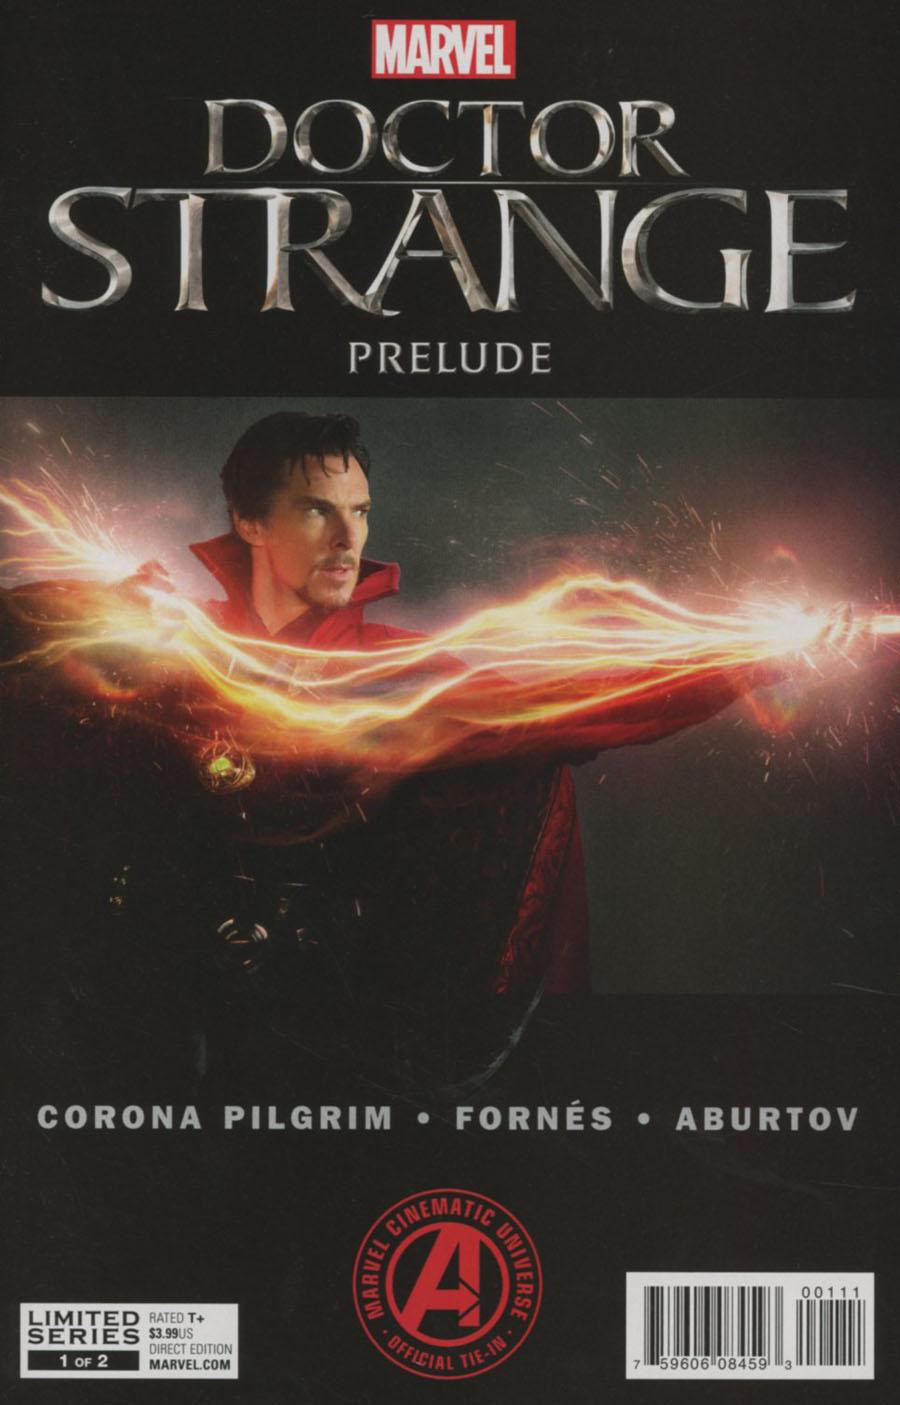 Marvels Doctor Strange Prelude Vol. 1 #1